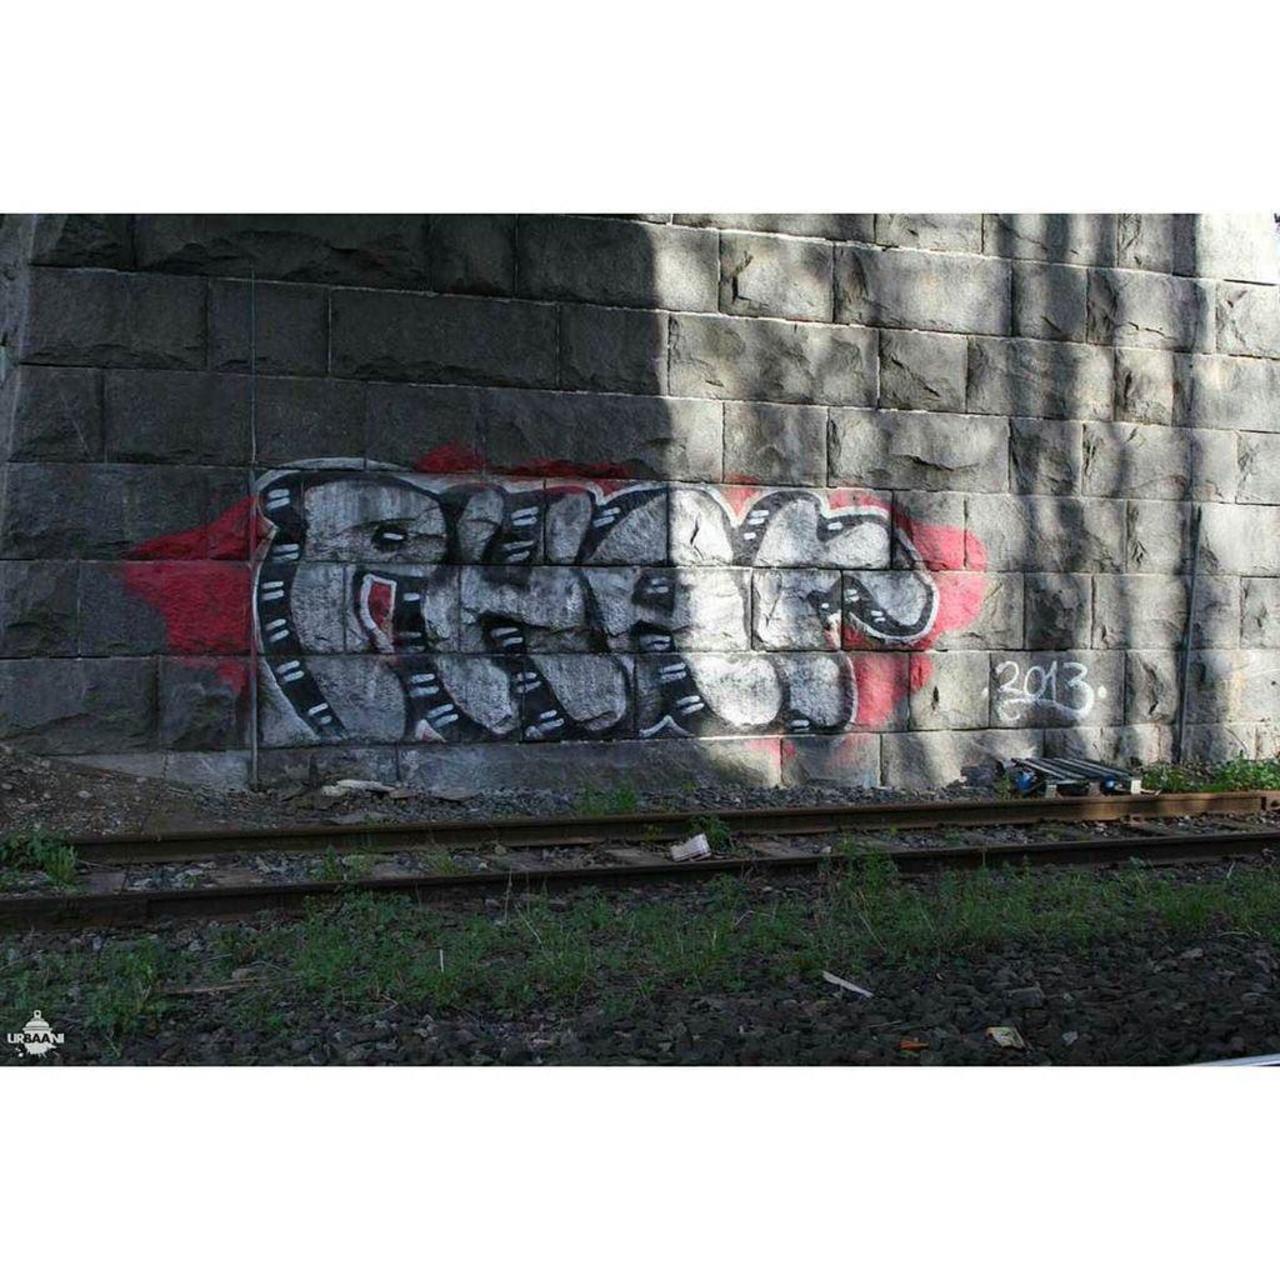 Phar, 2013.

#graffiti #graff #graffporn #graffitiporn #streetart #streetarteverywhere #in… http://ift.tt/1iWrWCs http://t.co/aMkiTel0Im